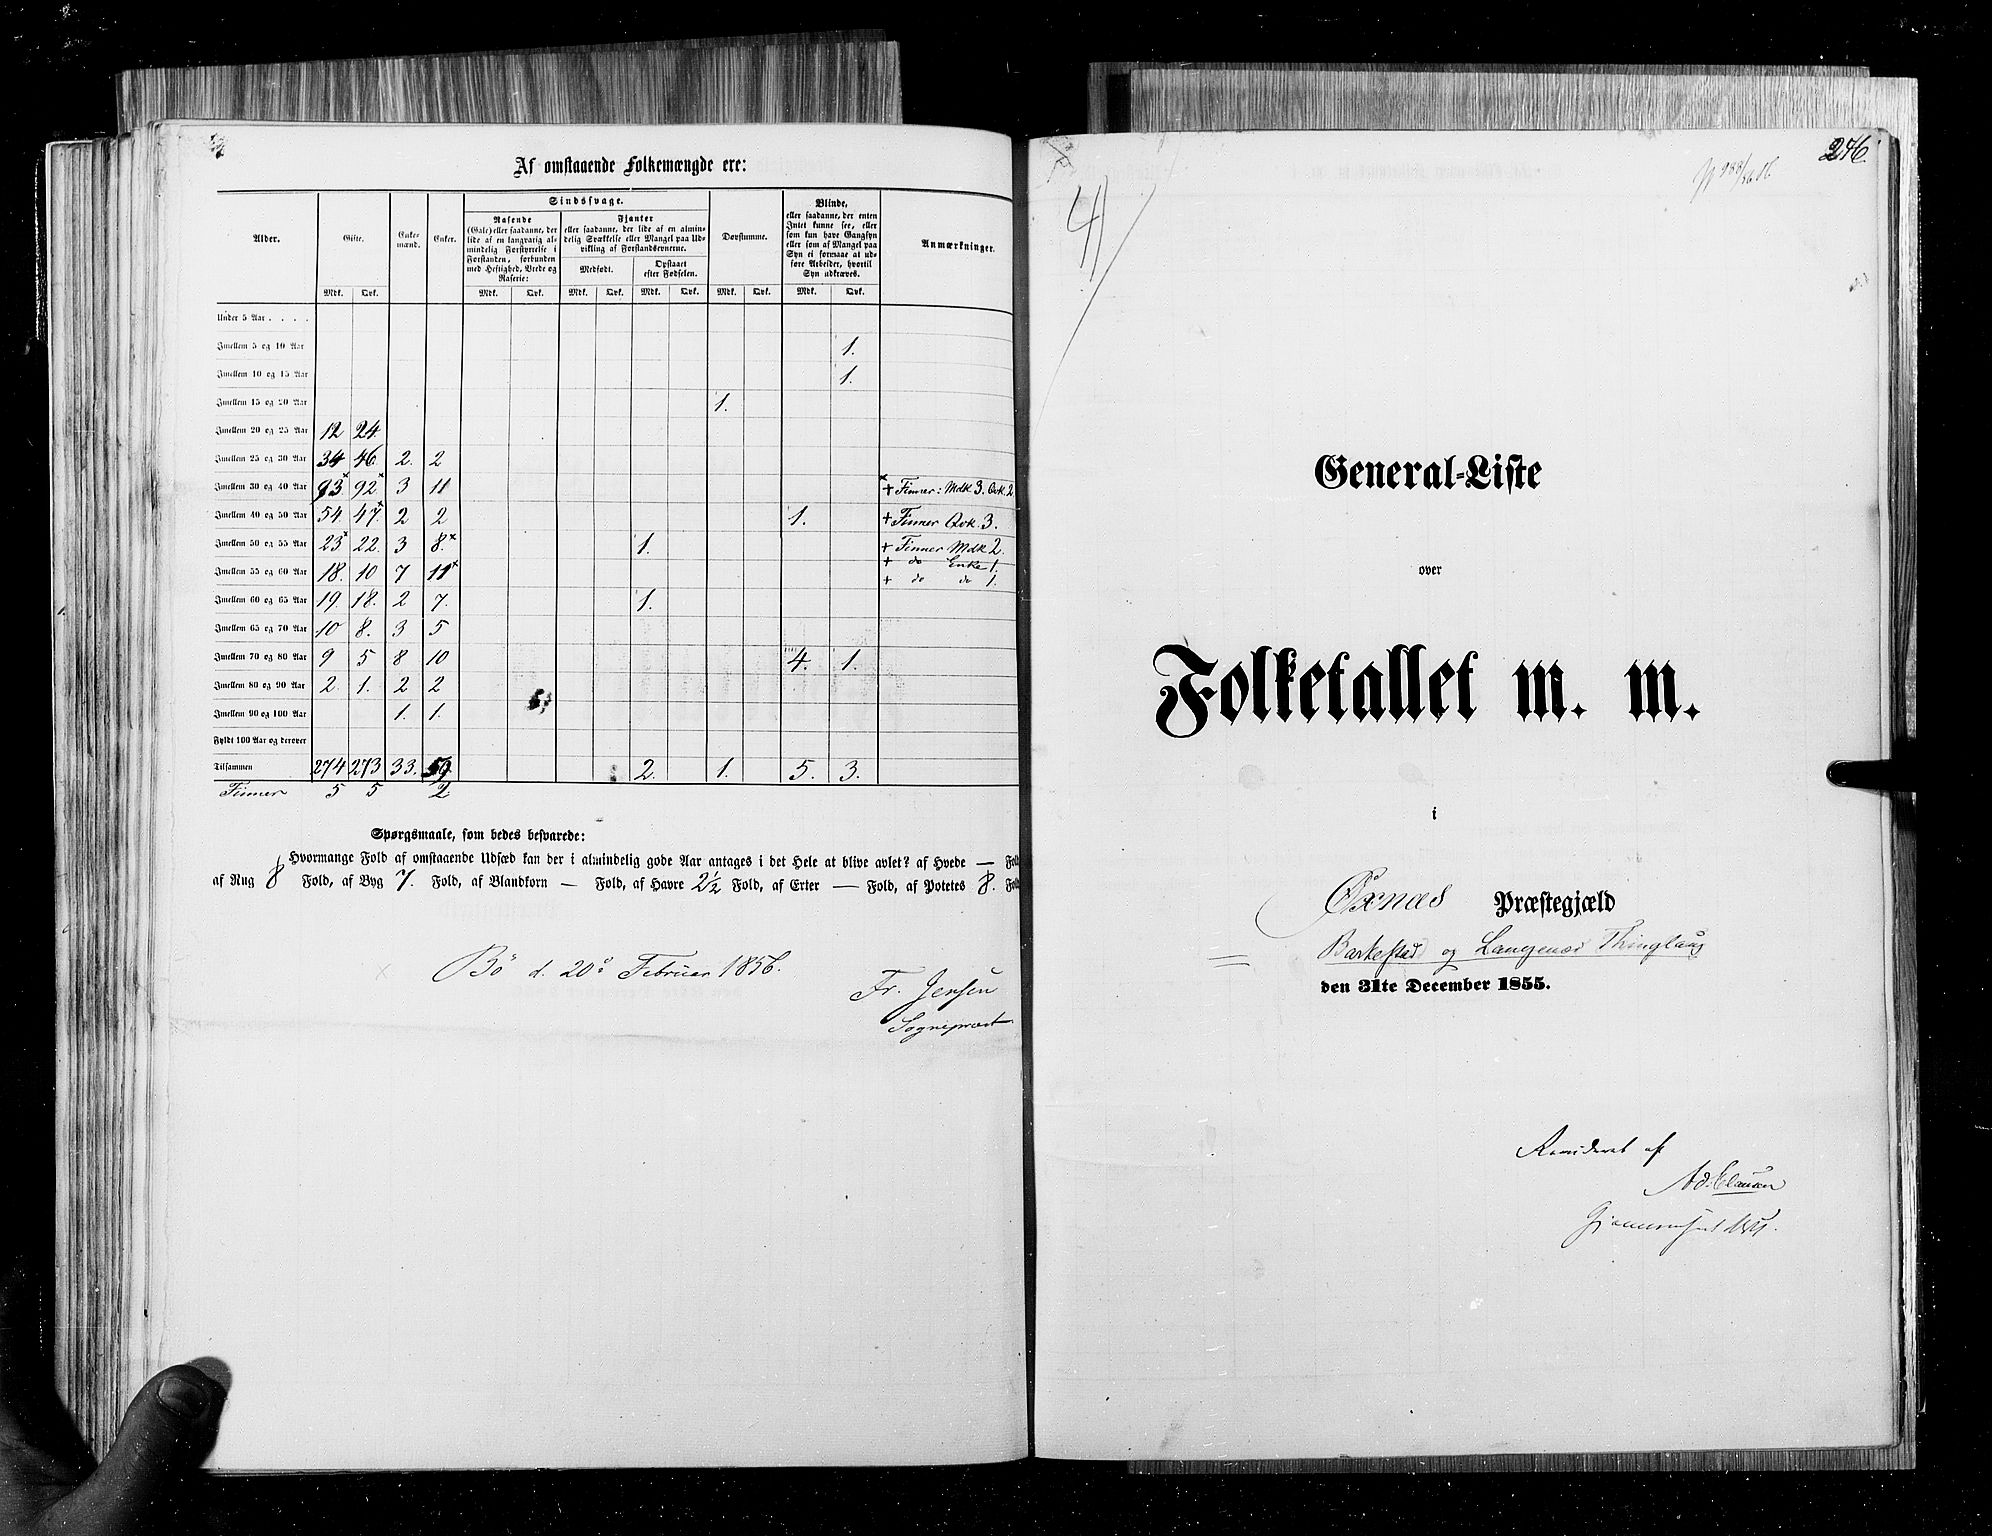 RA, Folketellingen 1855, bind 6B: Nordland amt og Finnmarken amt, 1855, s. 246